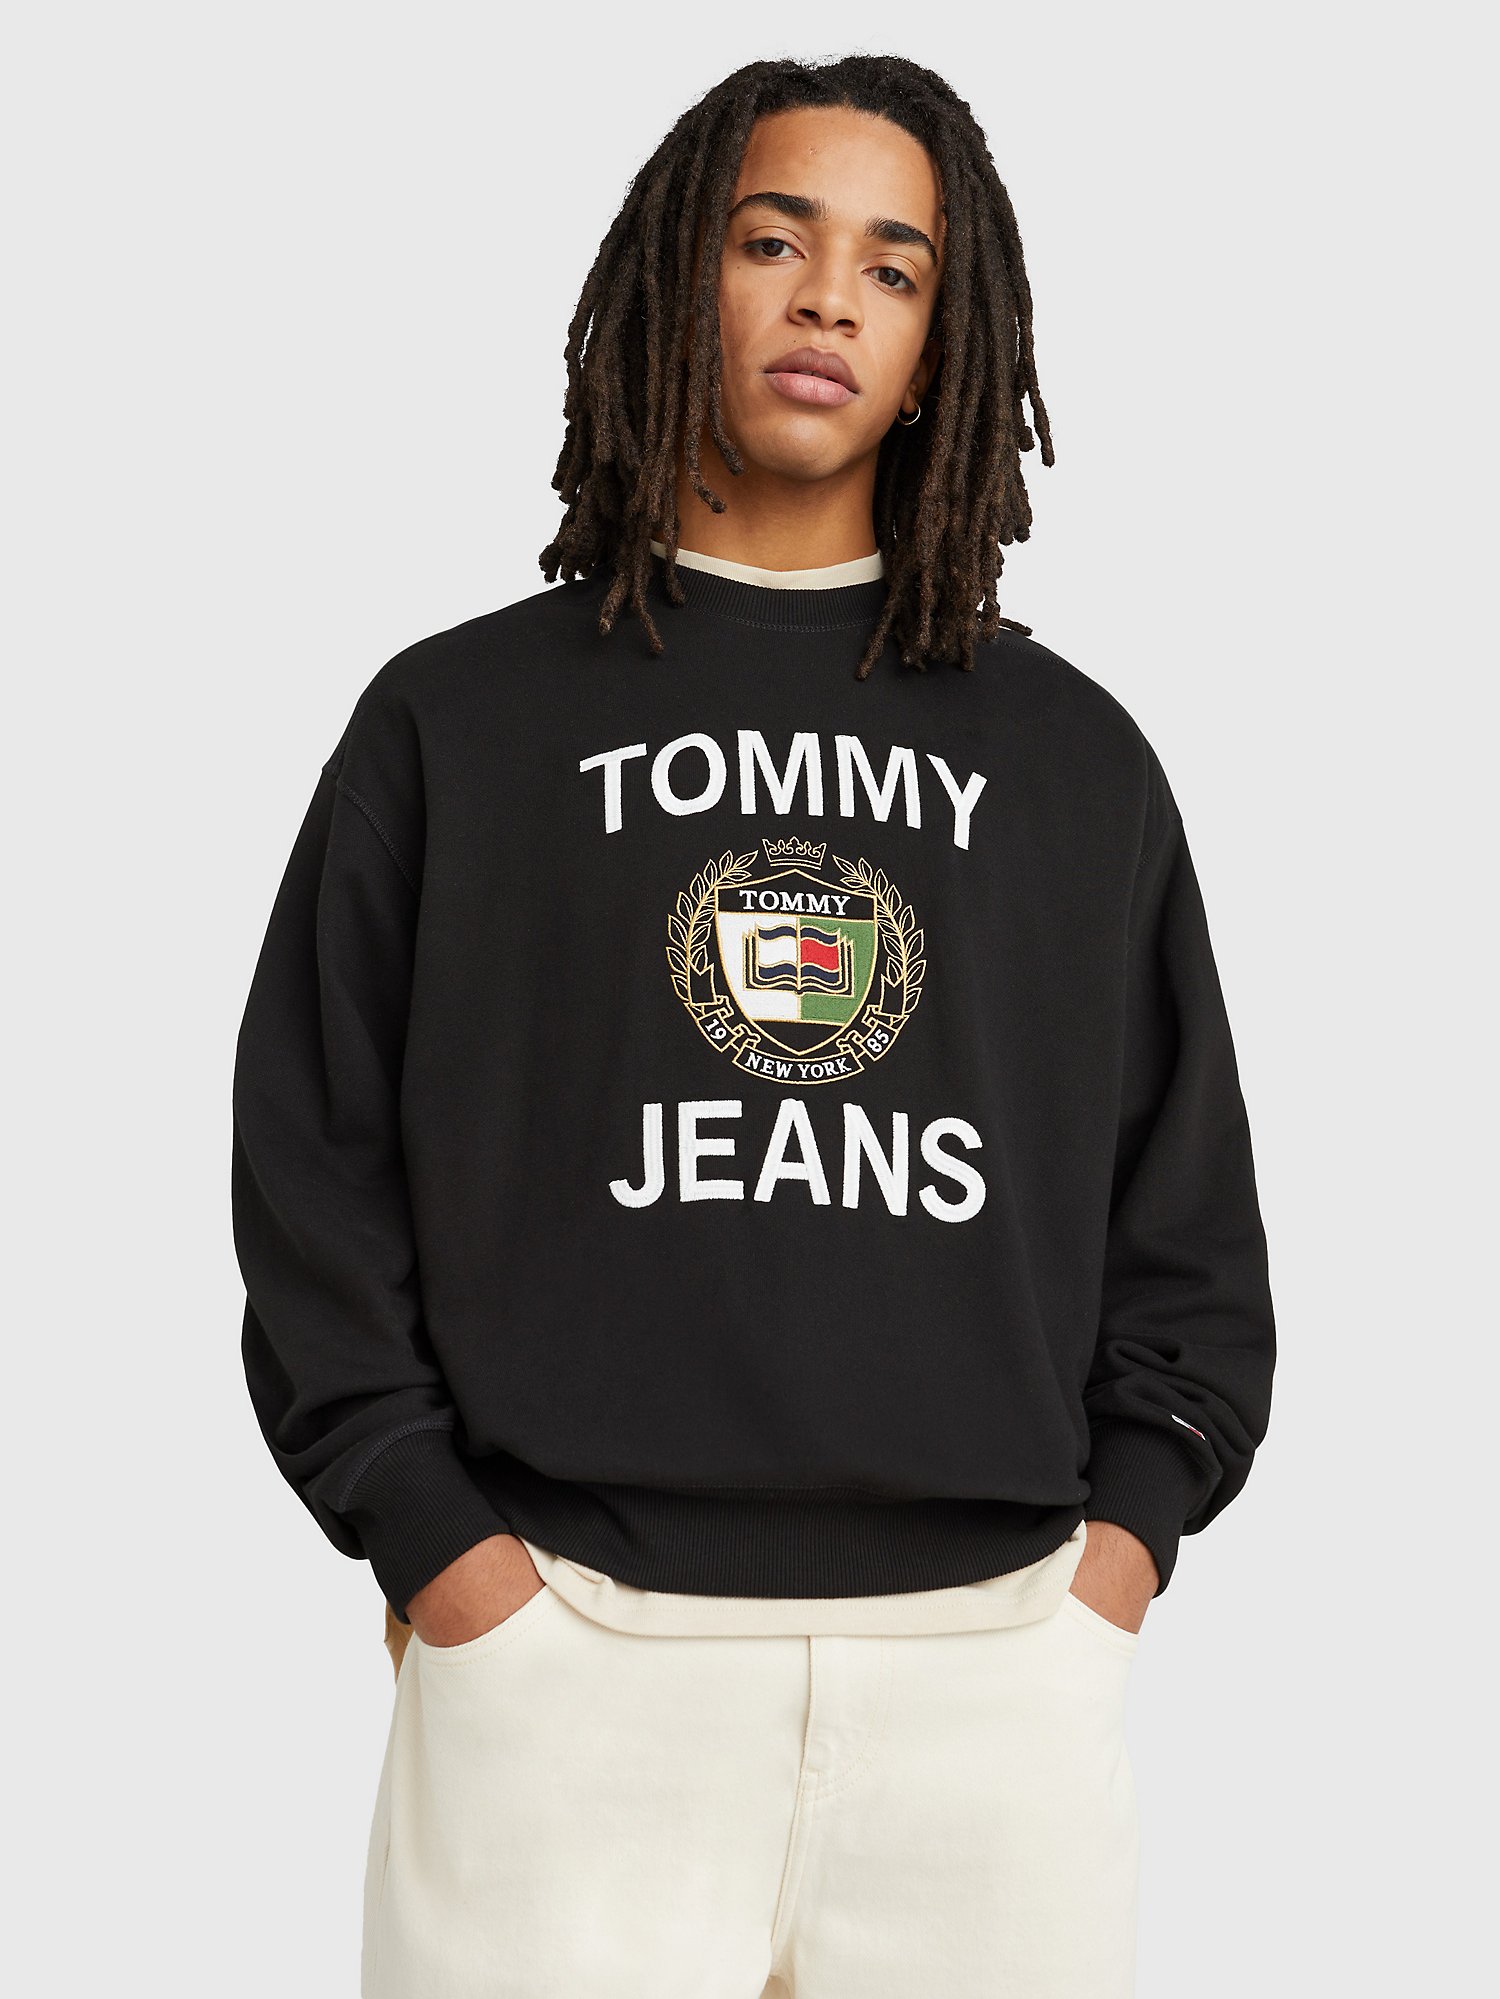 Kurv ramme Forståelse TJ Crest Logo Sweatshirt | Tommy Hilfiger